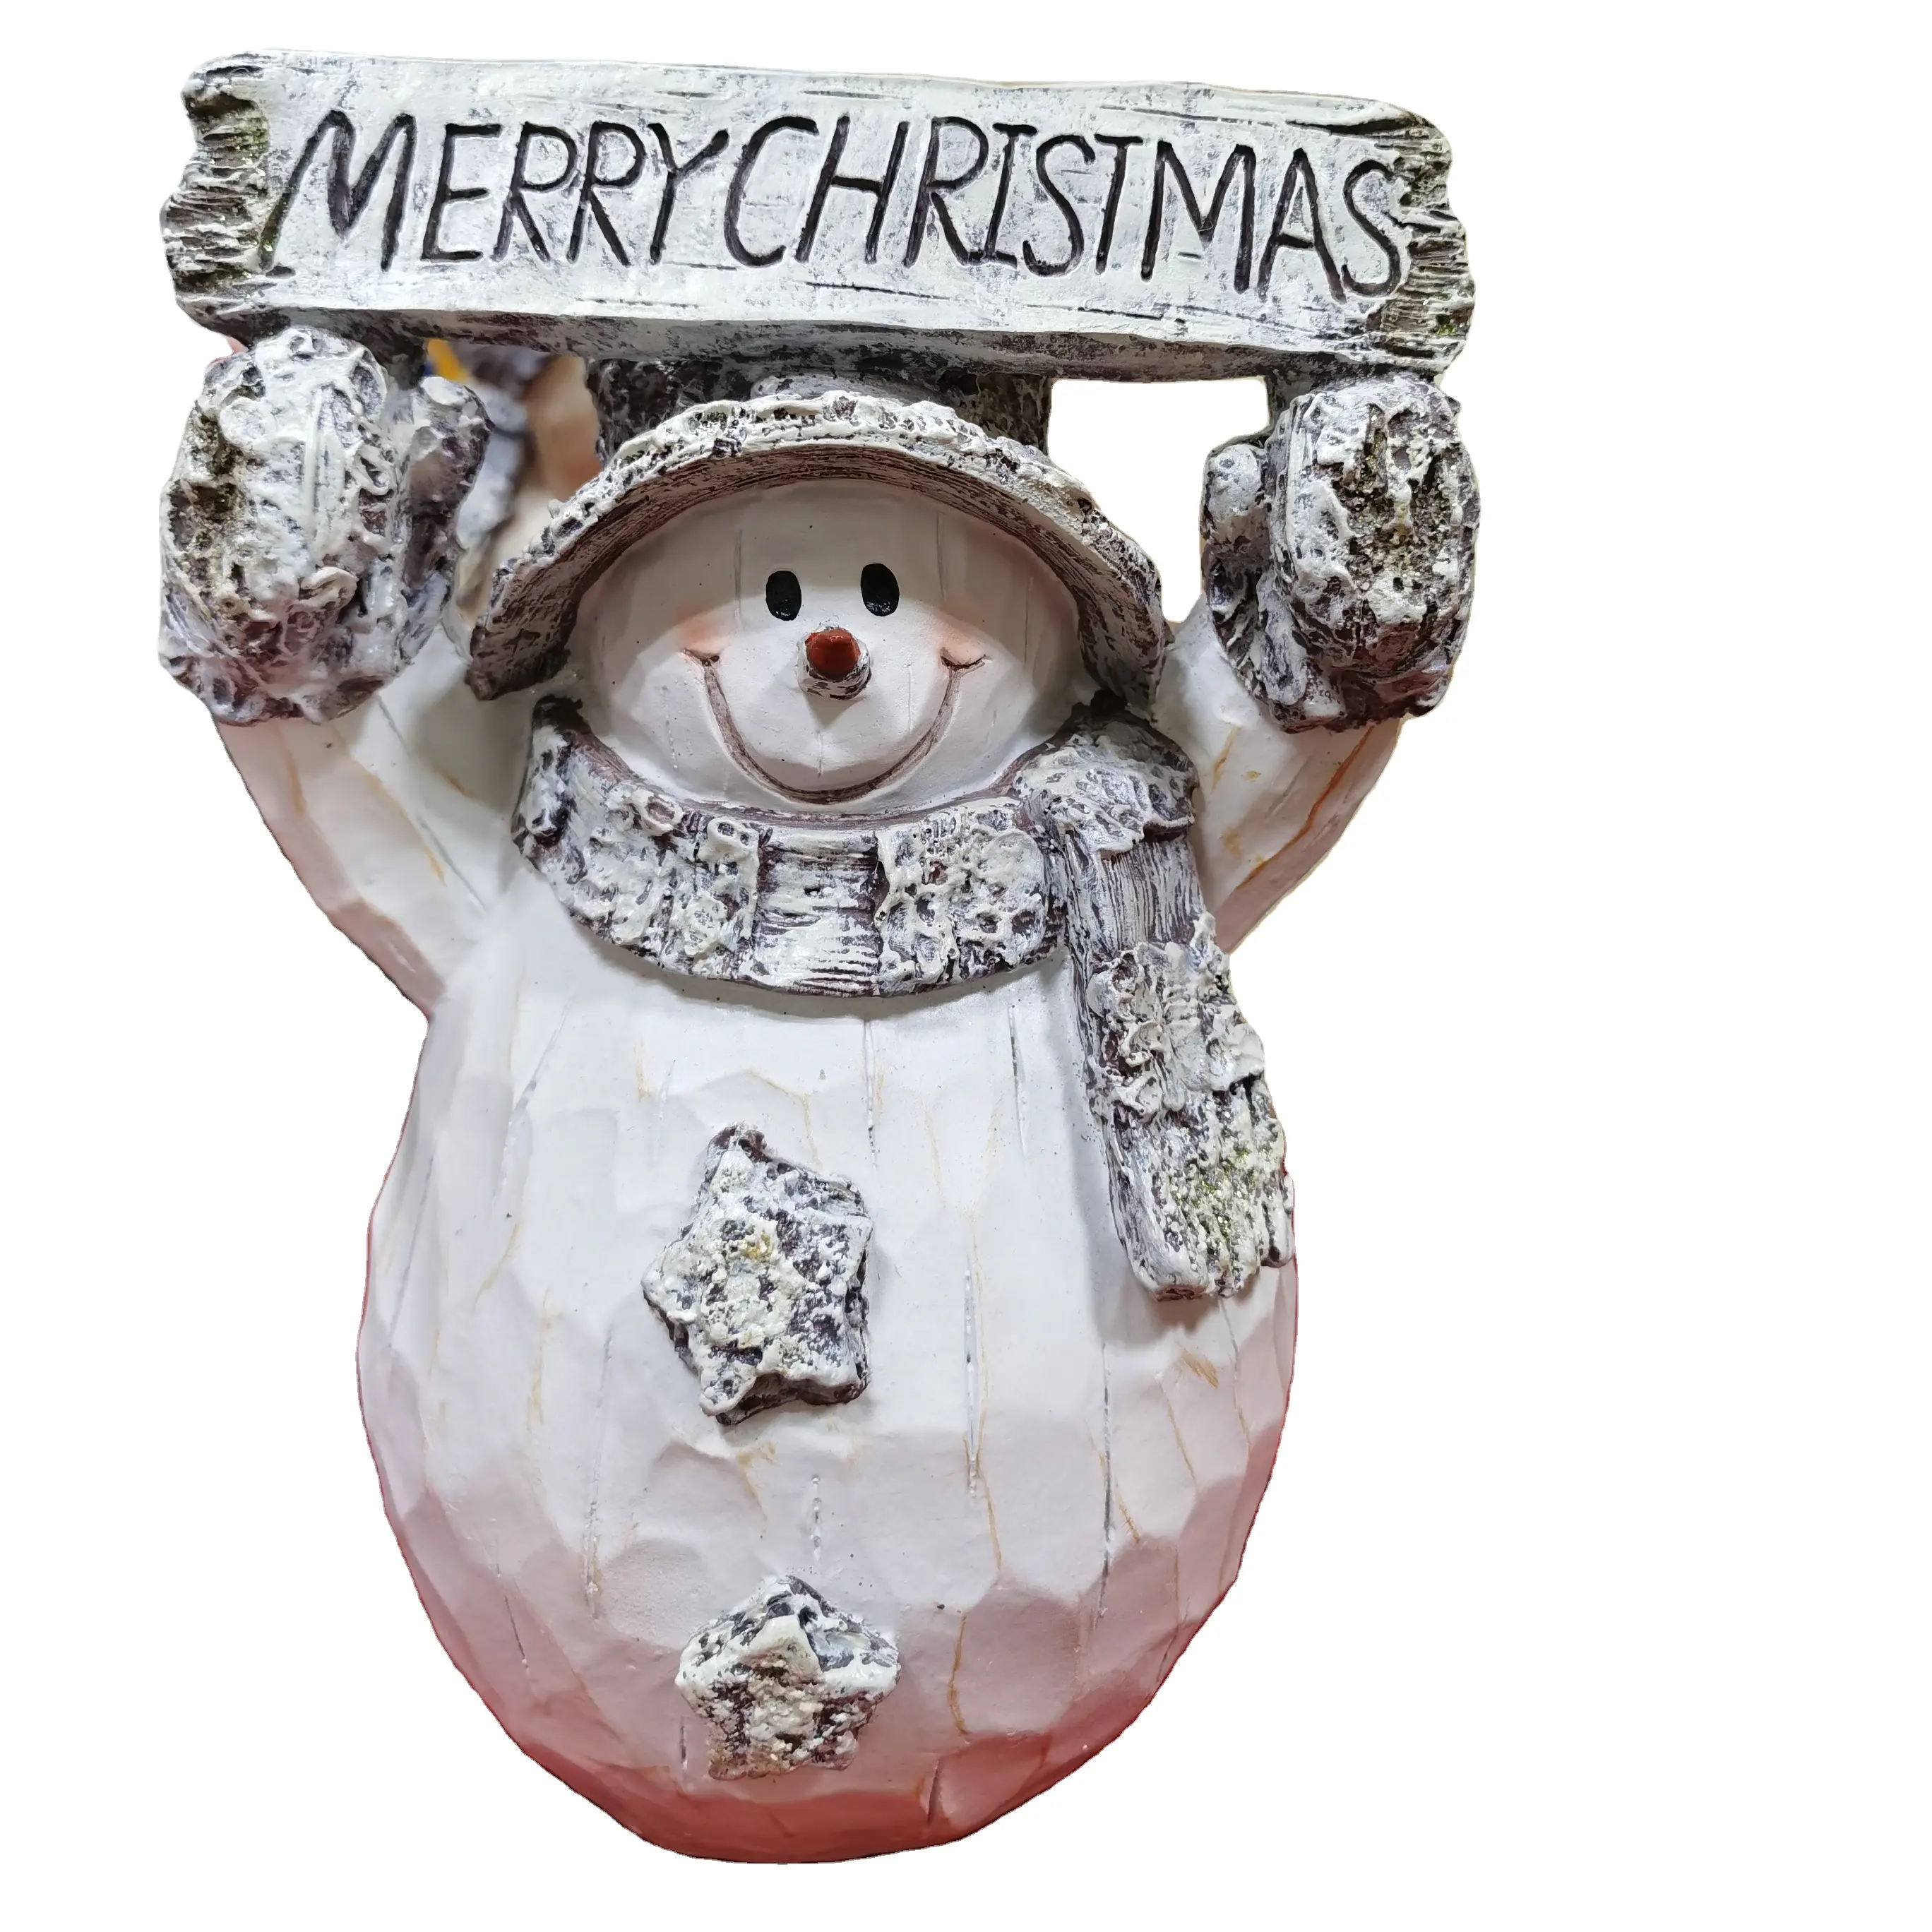 Resina Natal Bonitinho De Neve De Madeira Com Placa De Feliz Natal; Madeira Branca Natal Boneco De Neve Decoração Artesanato e presentes